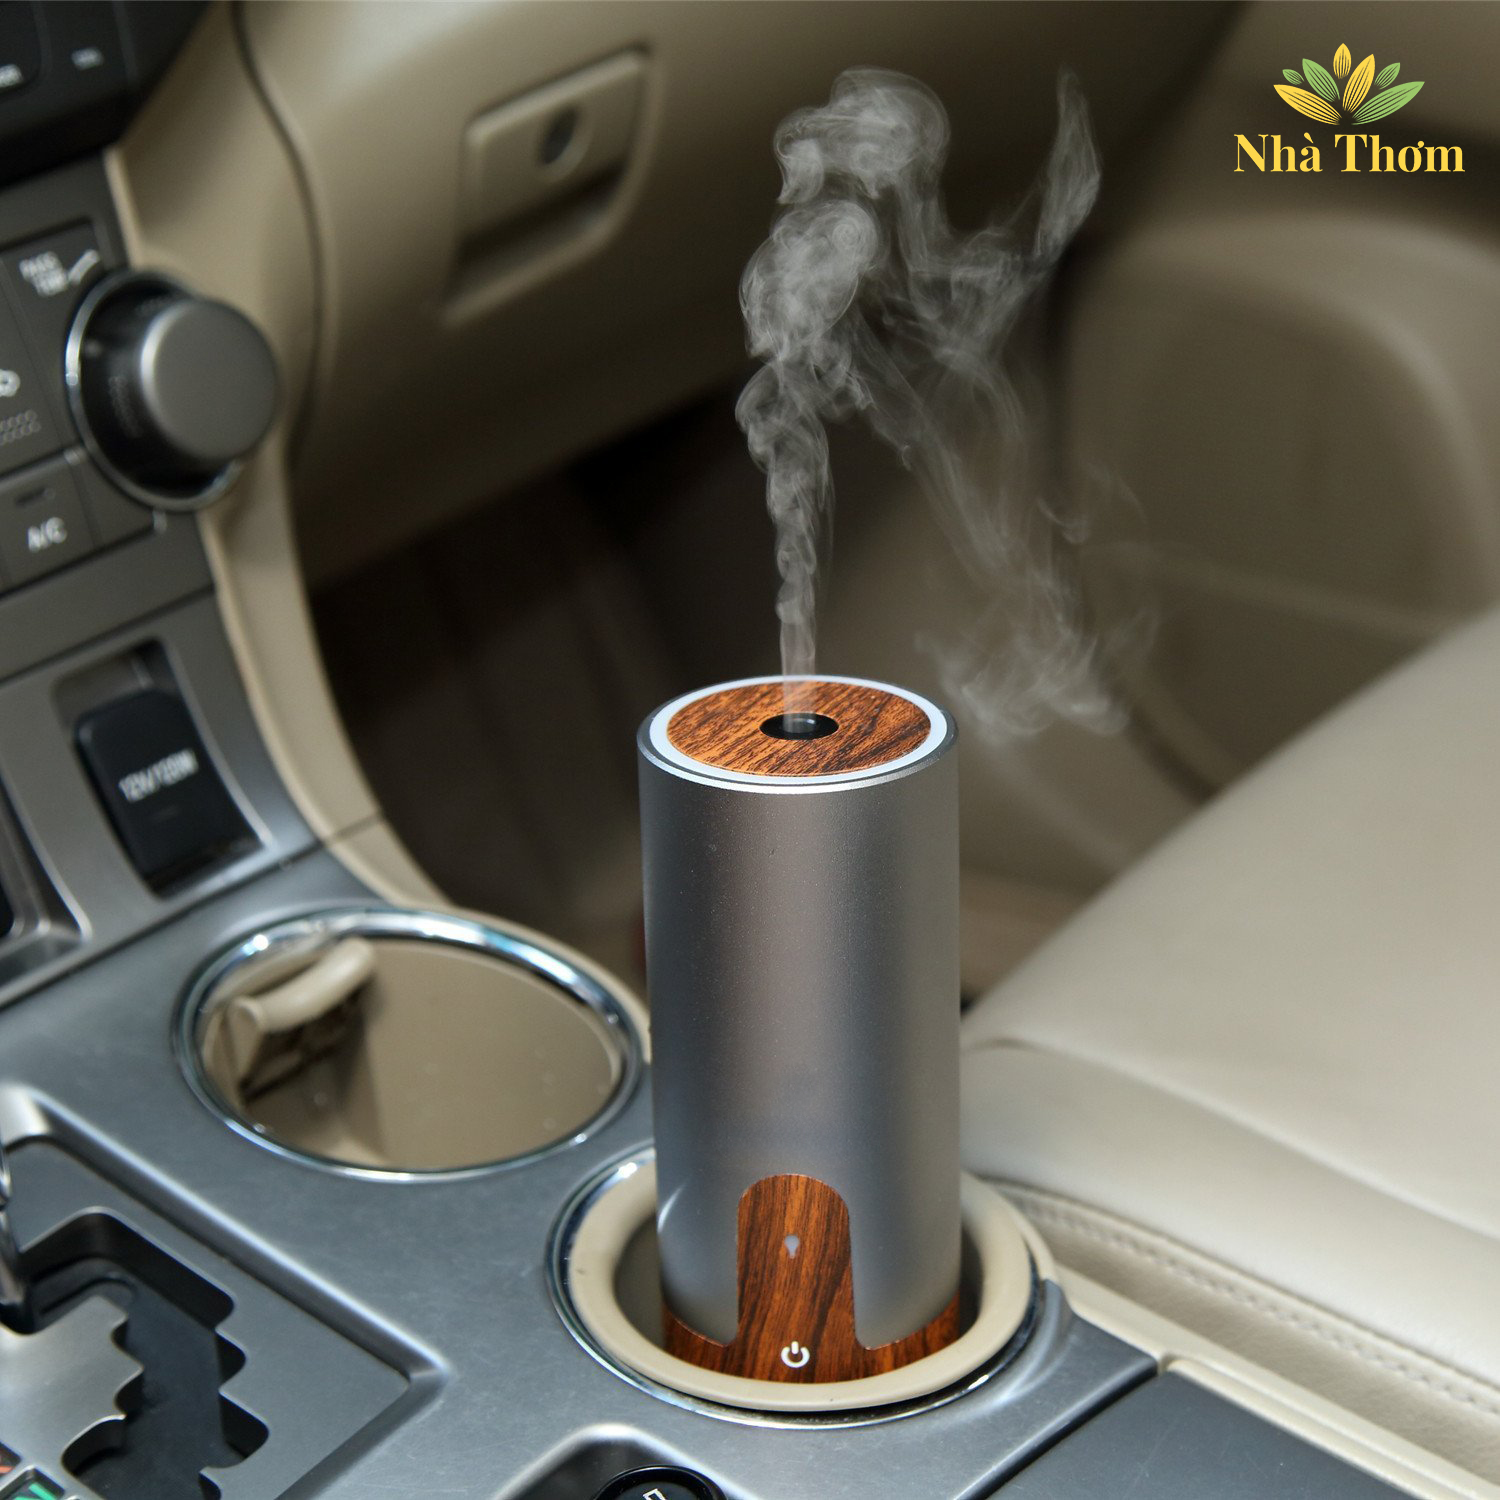 Mẹo khử mùi trên xe ô tô hiệu quả, bằng máy phun sương giành riêng cho ô tô.